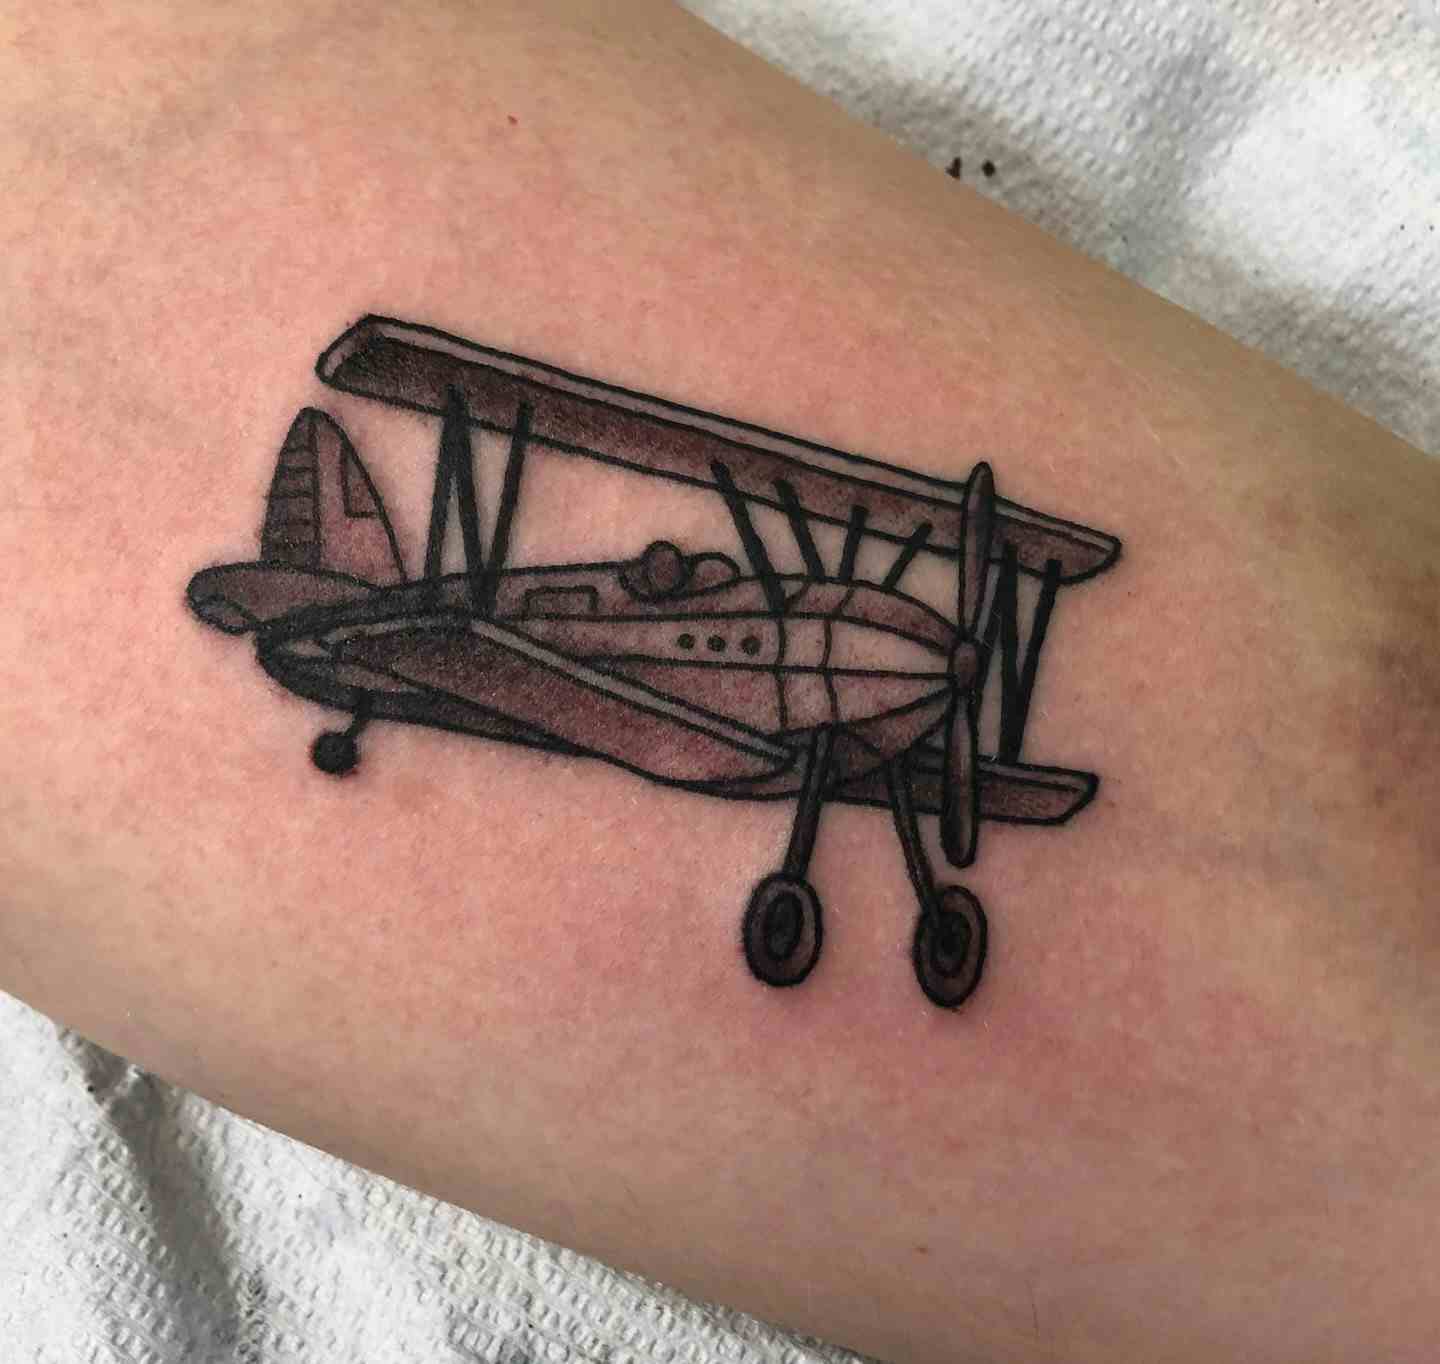 Biplane tattoo